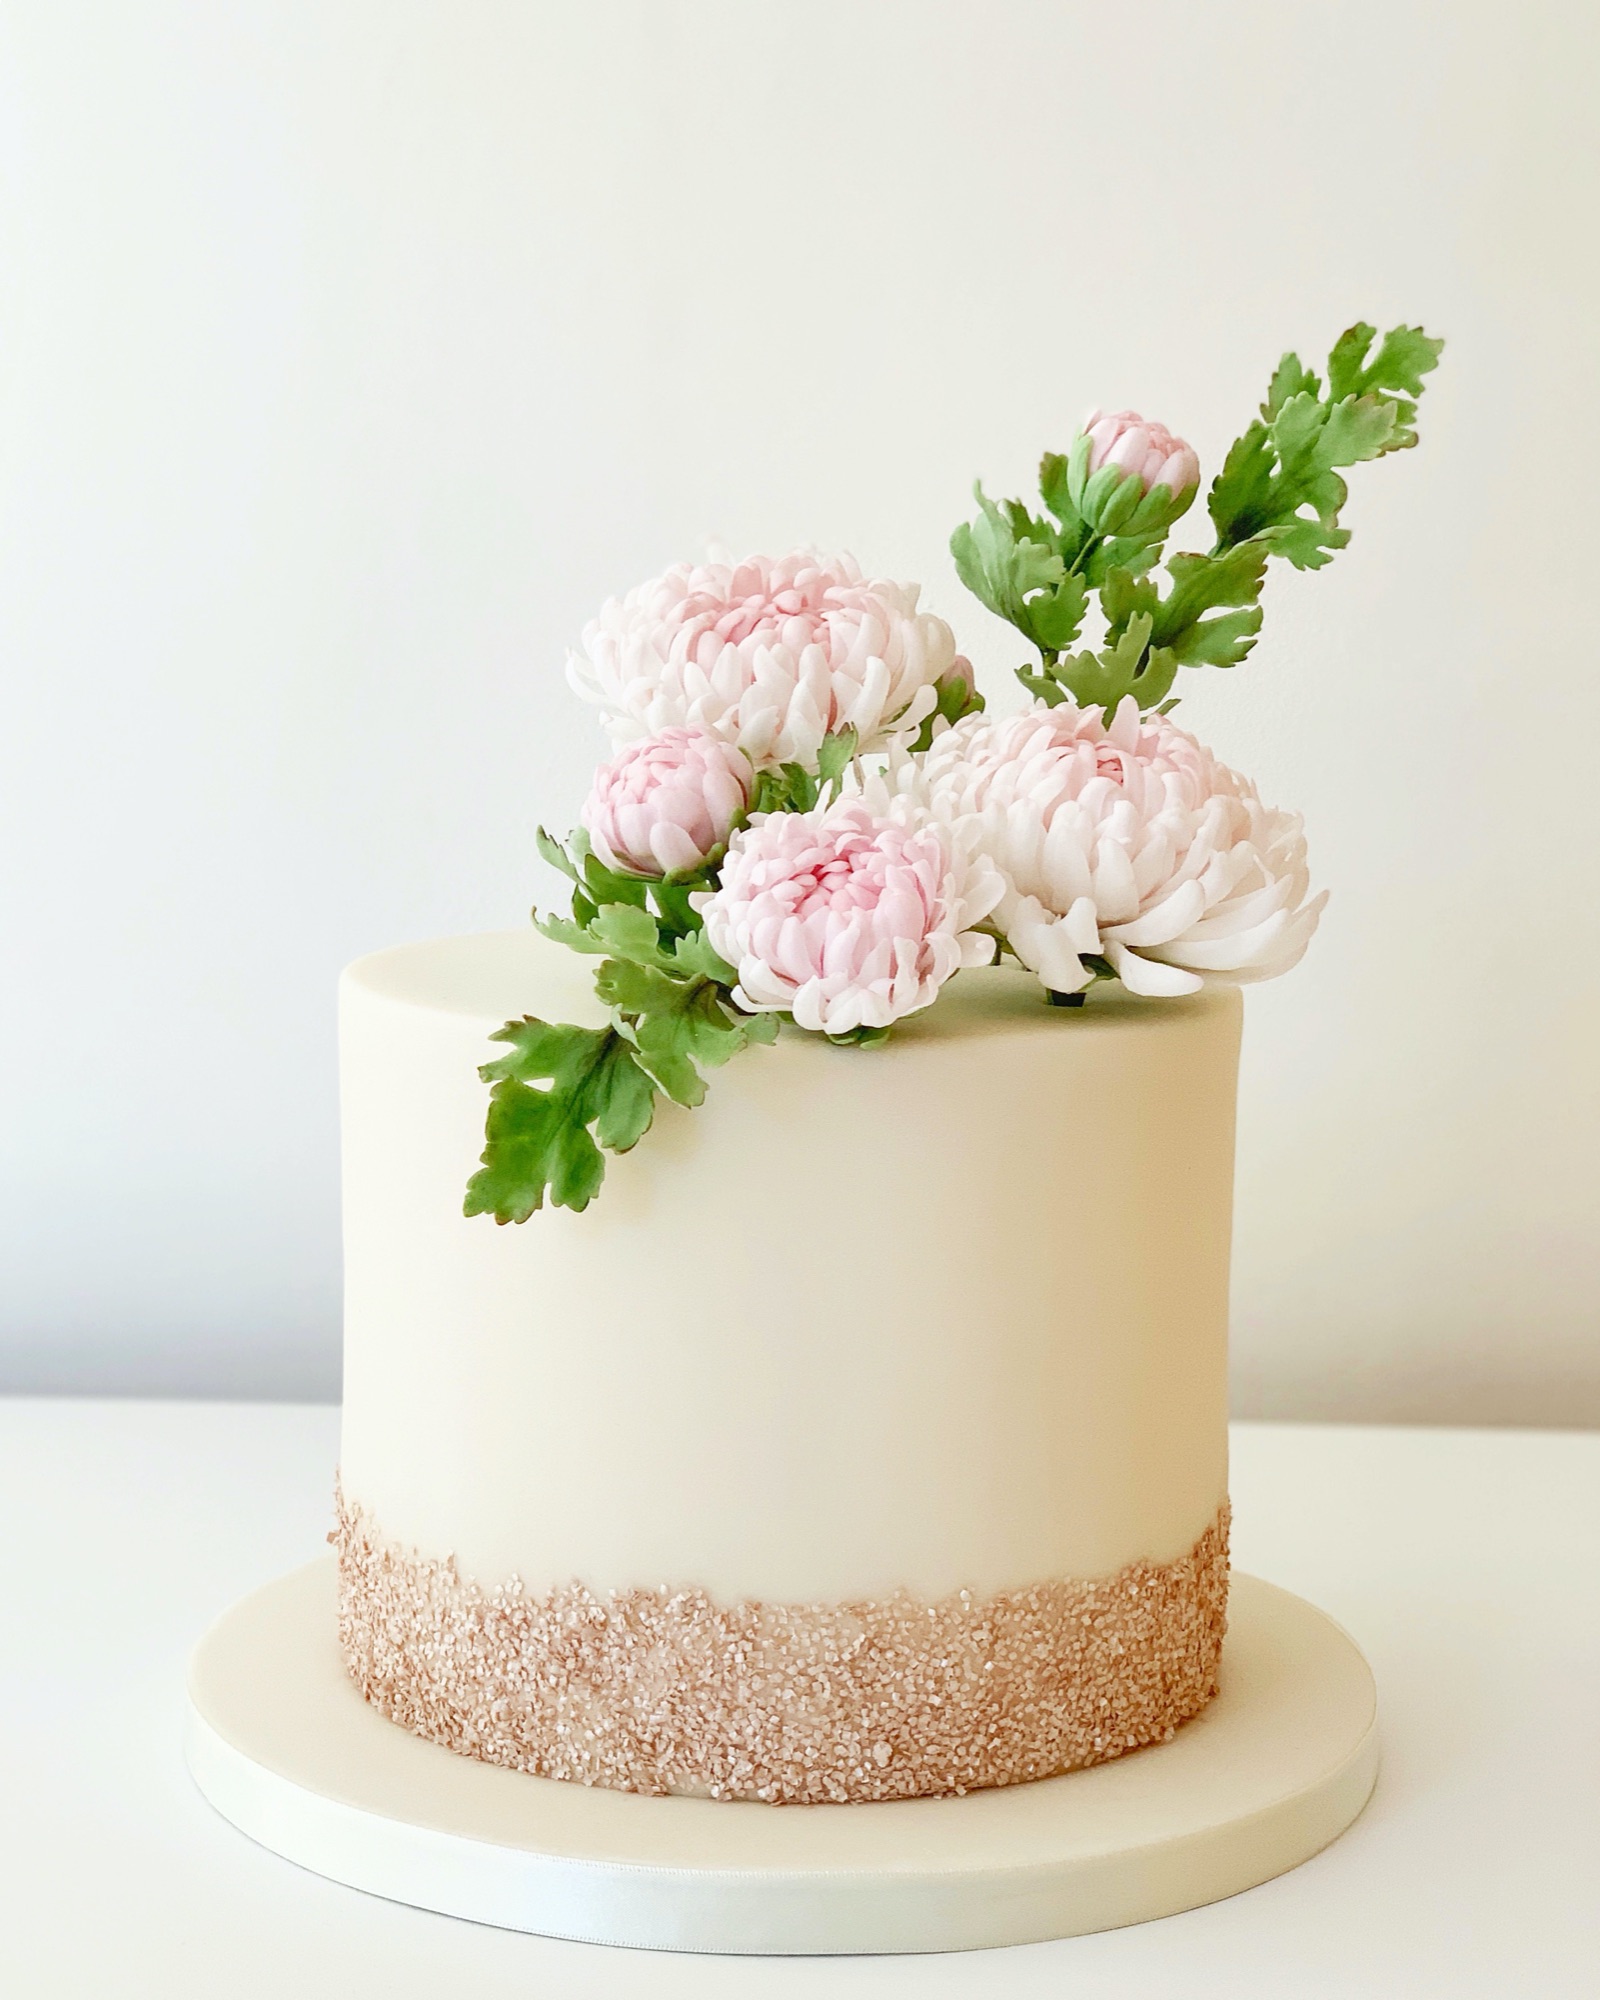 Chrysanthemum wedding cake